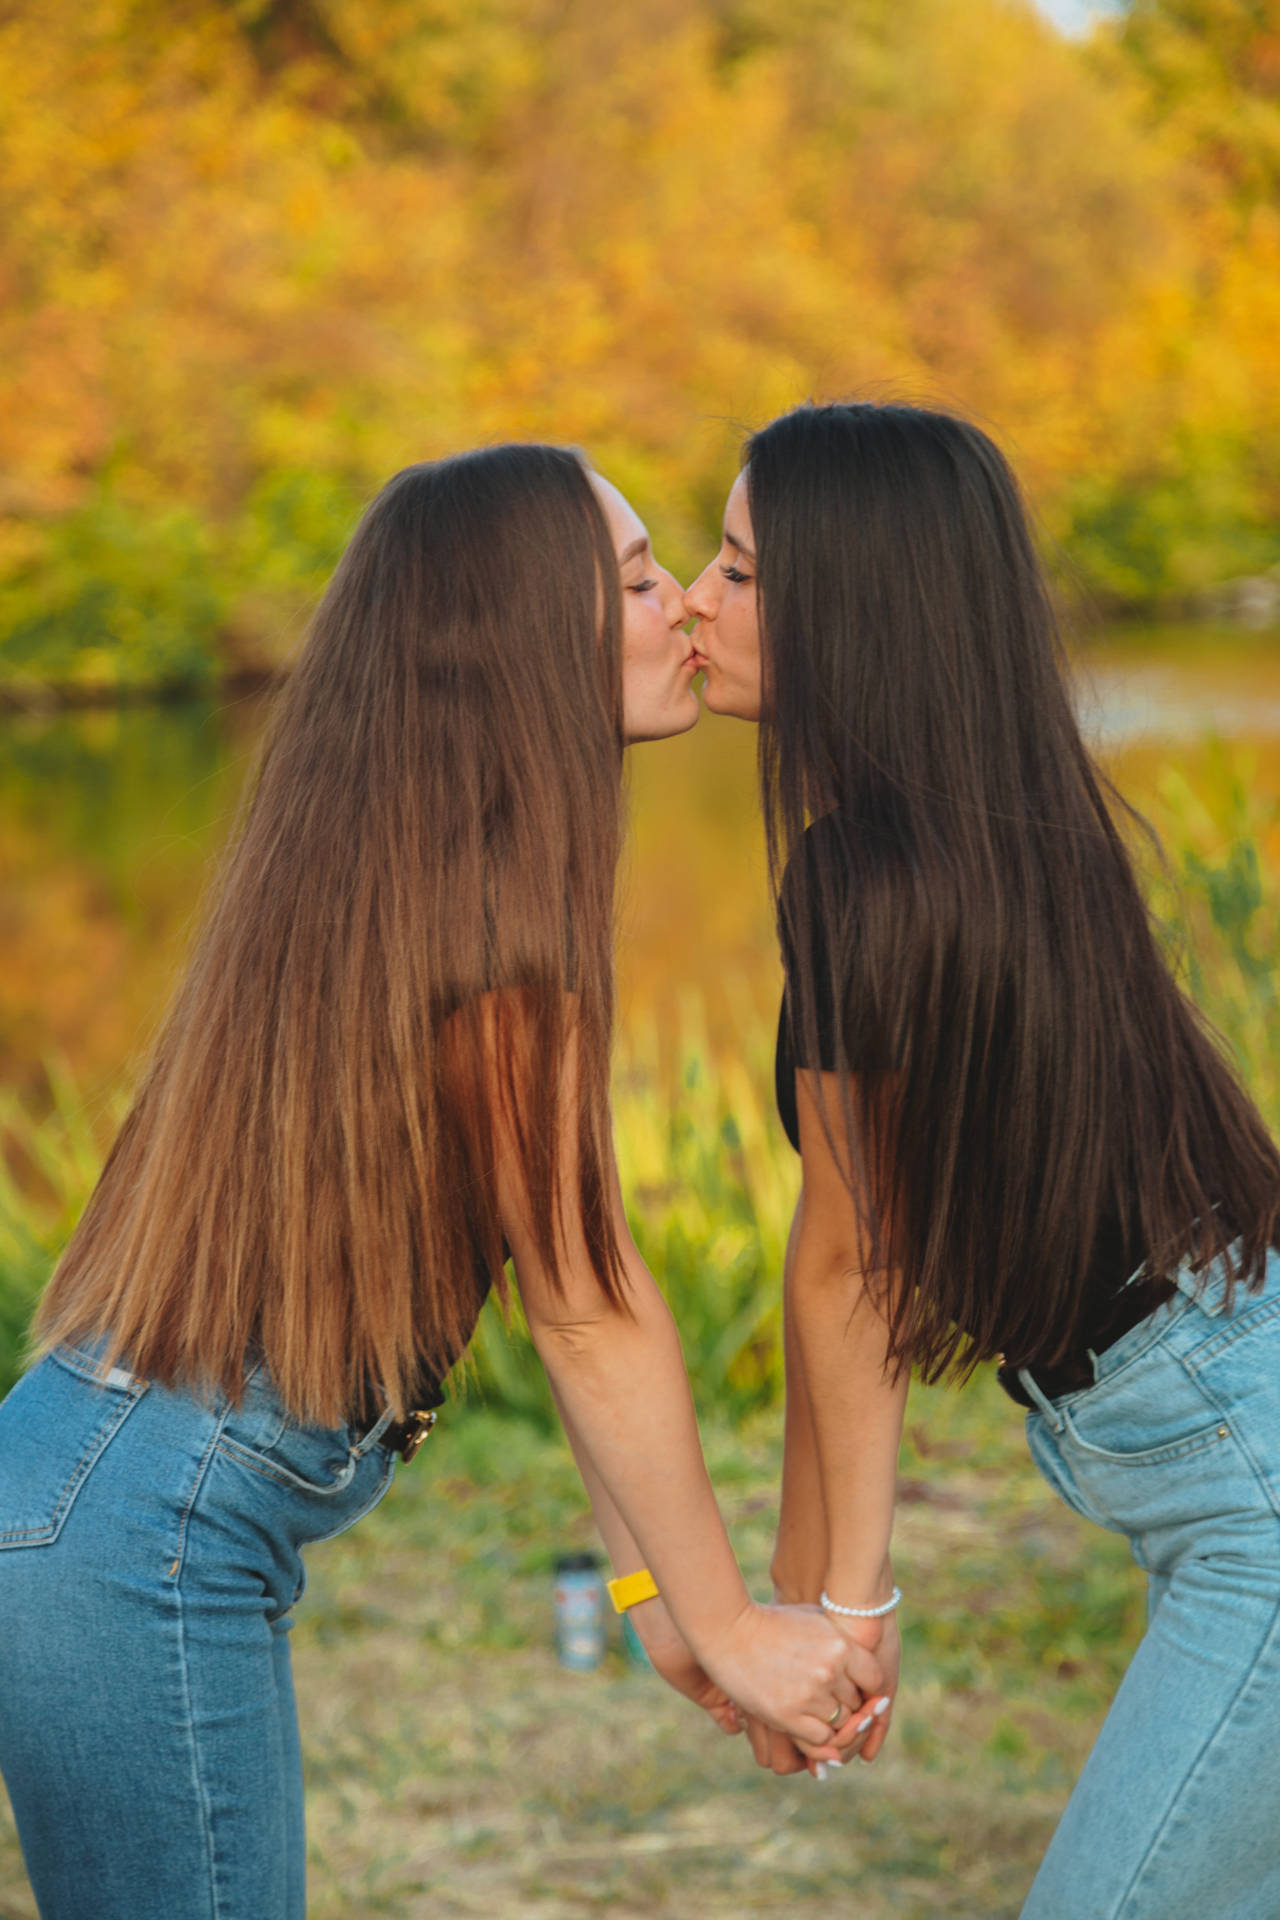 Model Girls Kissing Wallpaper